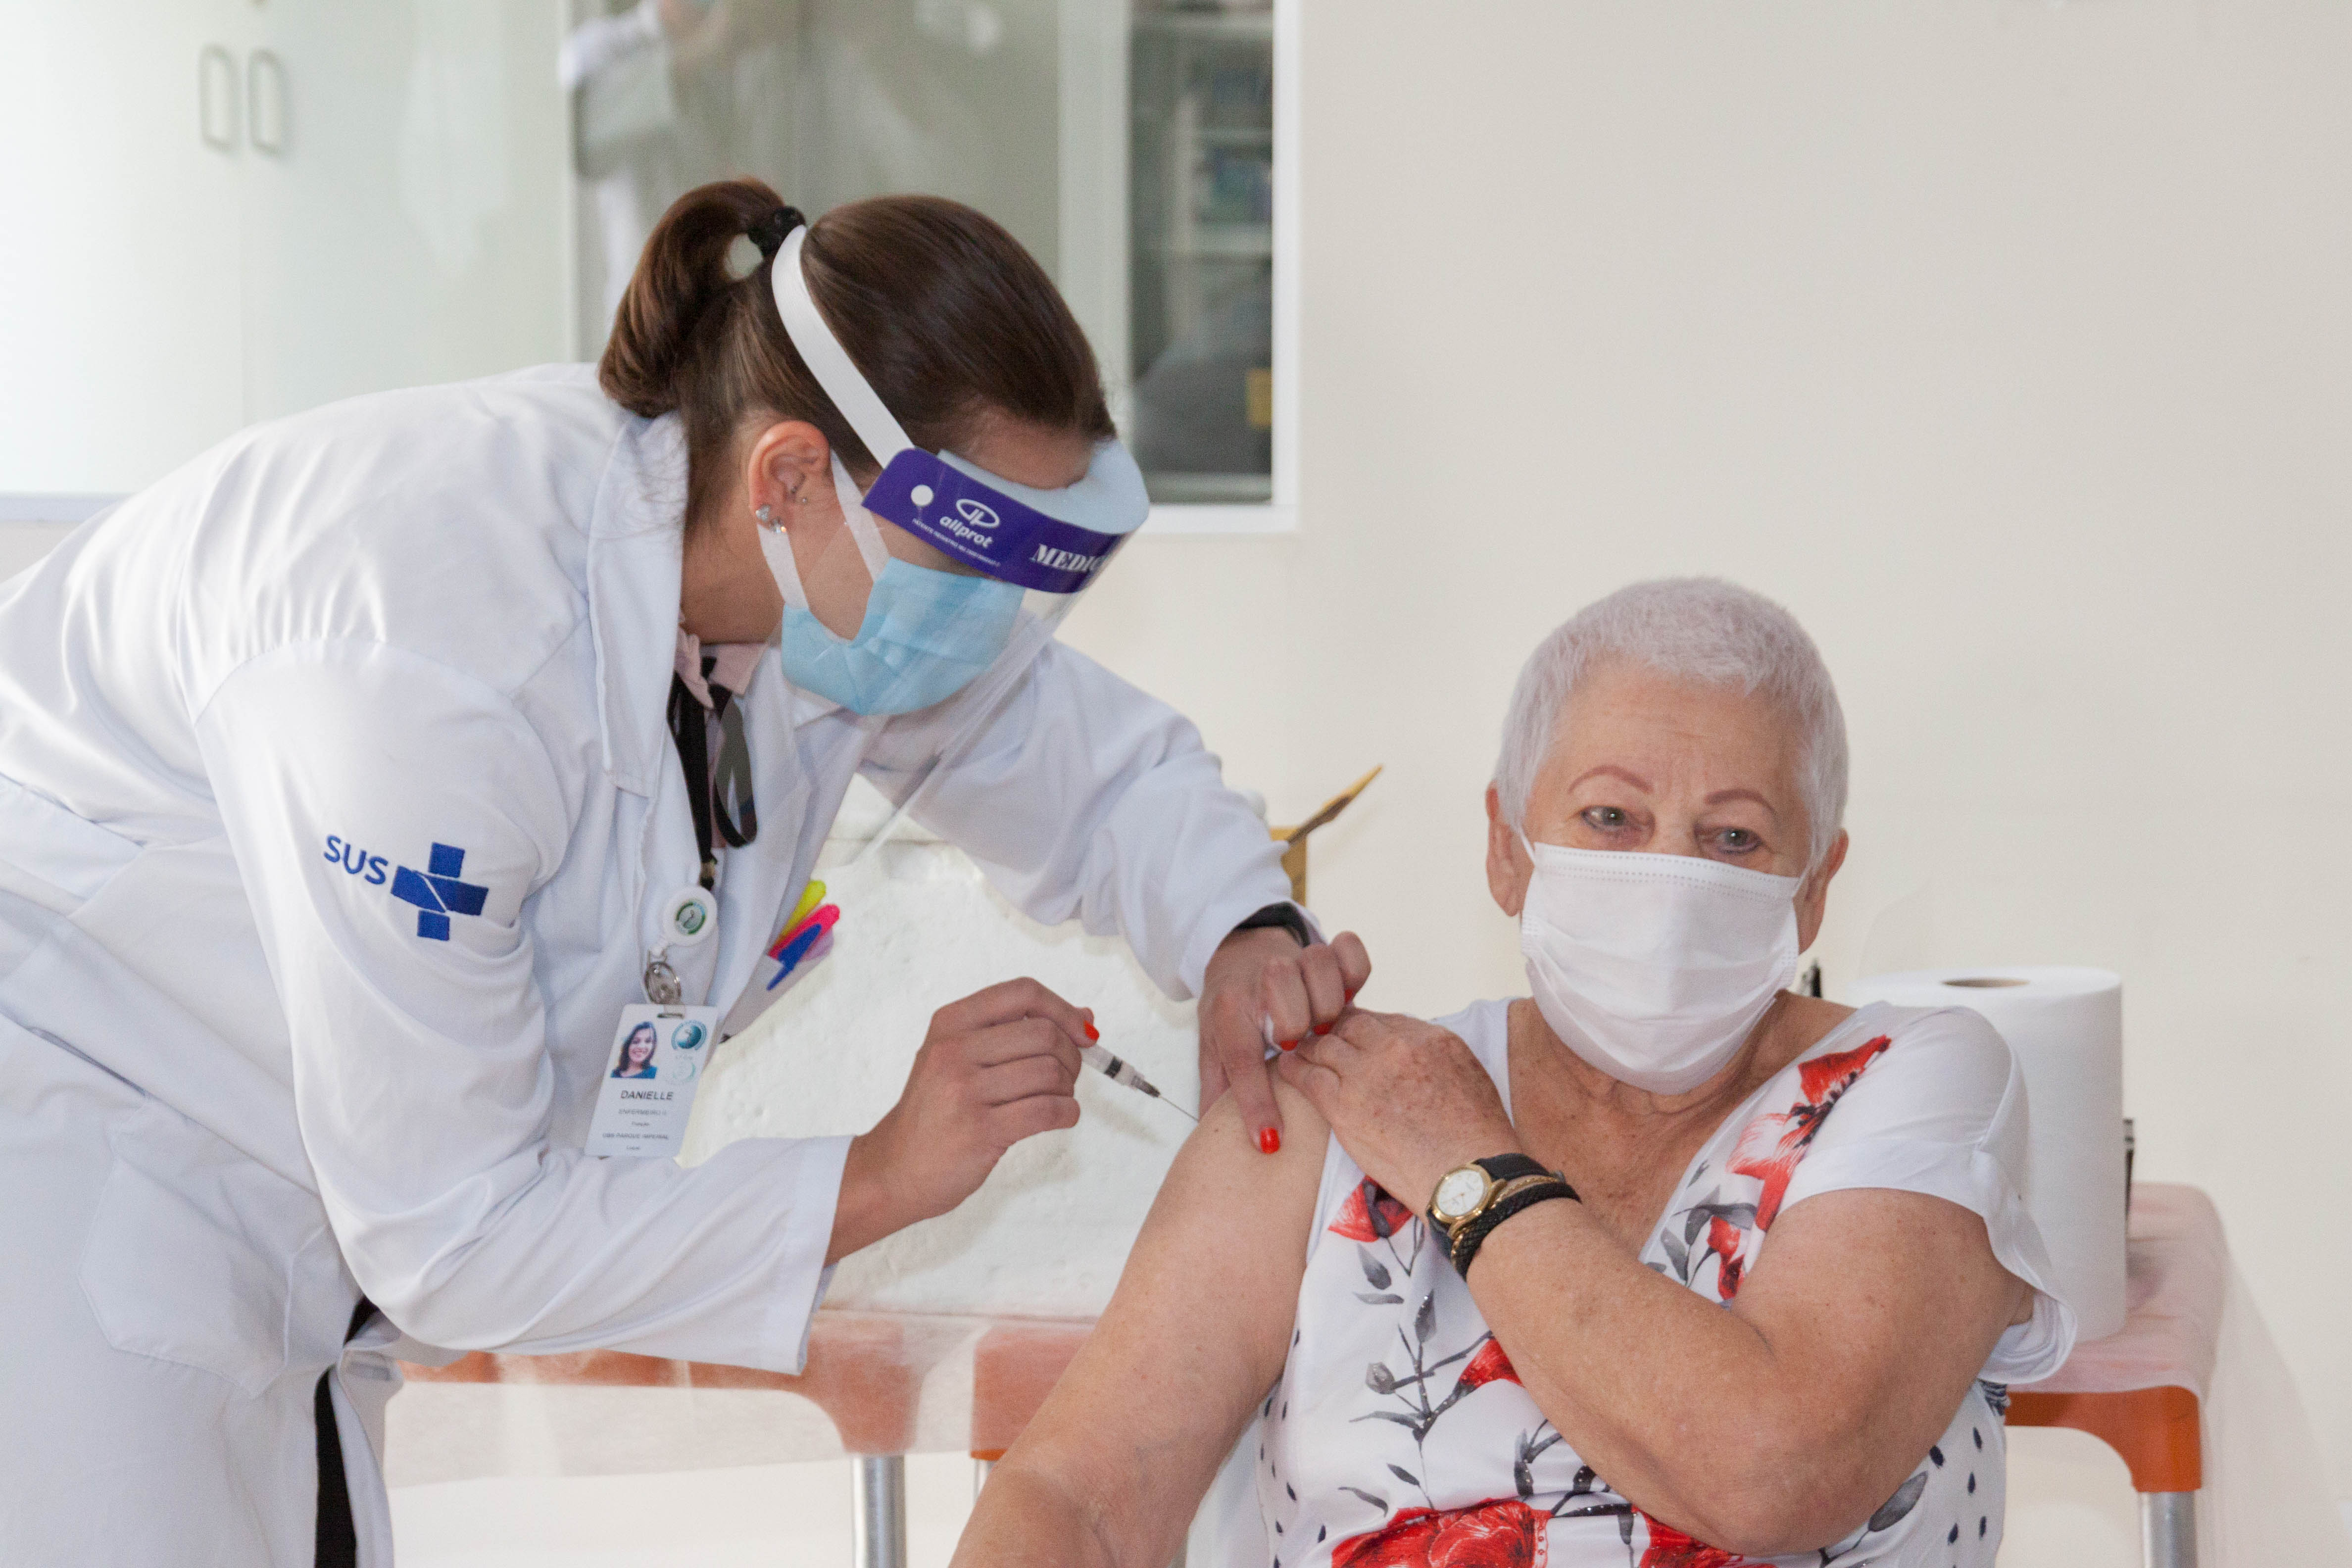 A convivente da Instituição de Longa Permanência para Idosos Vila Mariana, Rosa Nullman, em seu momento de vacinação. A vacina é aplicada por uma enfermeira vestindo os devidos aparatos de segurança.